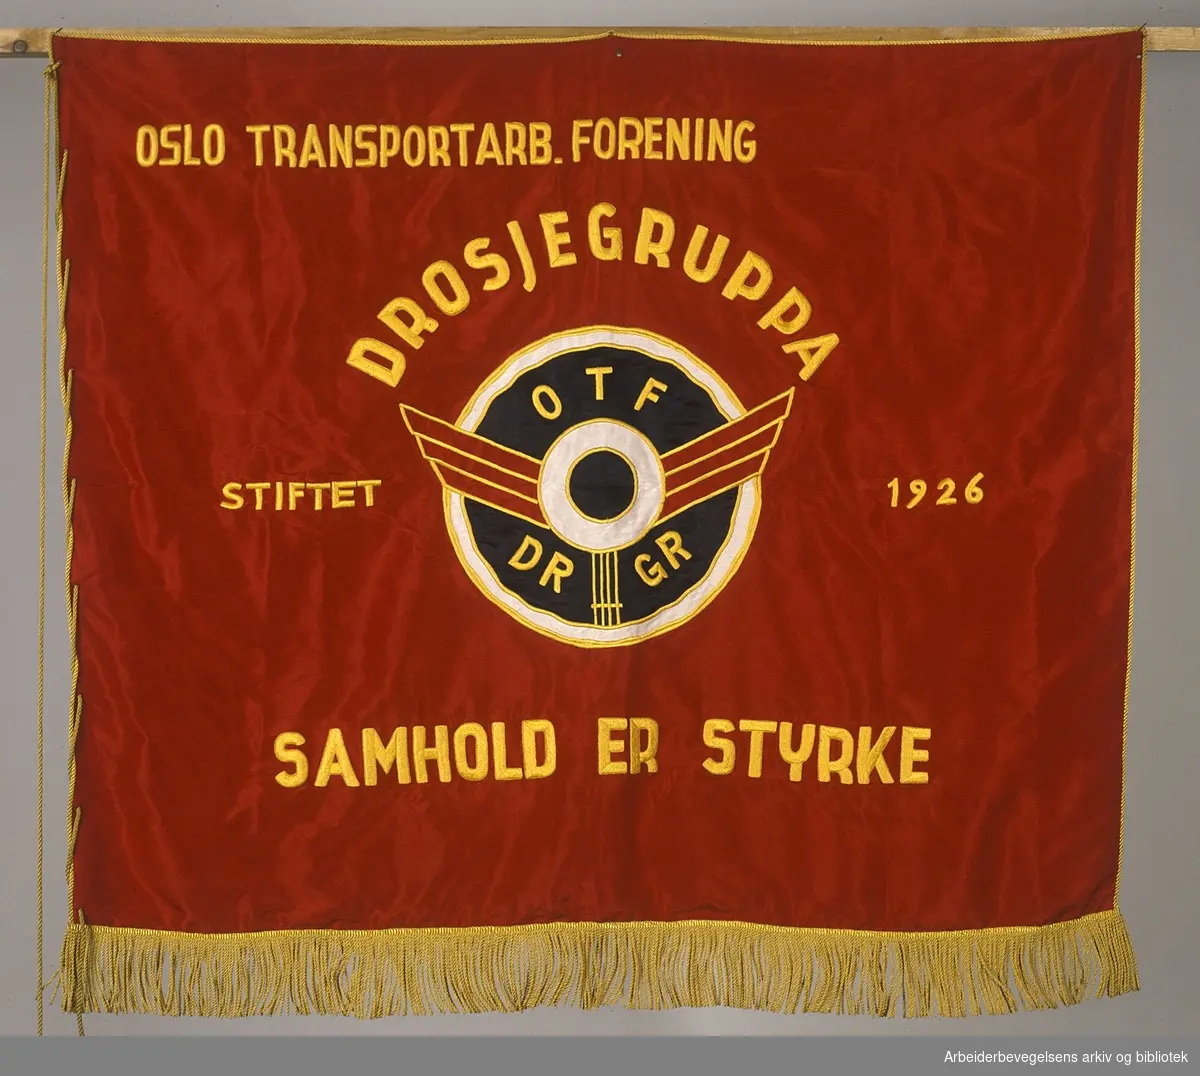 Oslo transportarbeiderforening. Drosjegruppa..Forside..Fanetekst: Oslo Transportarb. forening Drosjegruppa.Stiftet 1926. Samhold er styrke